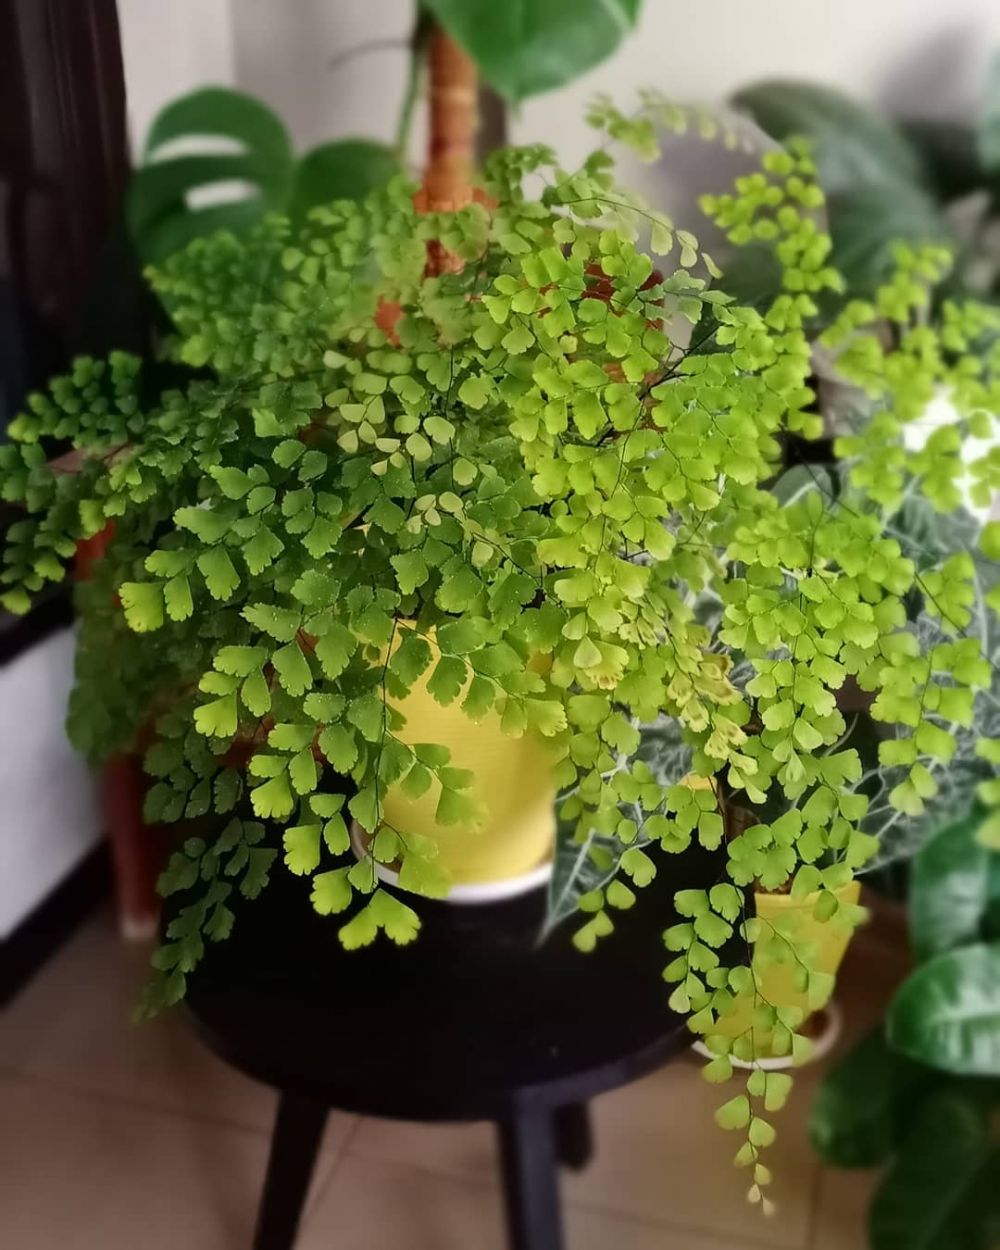 Cara merawat dan menanam tanaman hias daun suplir Instagram